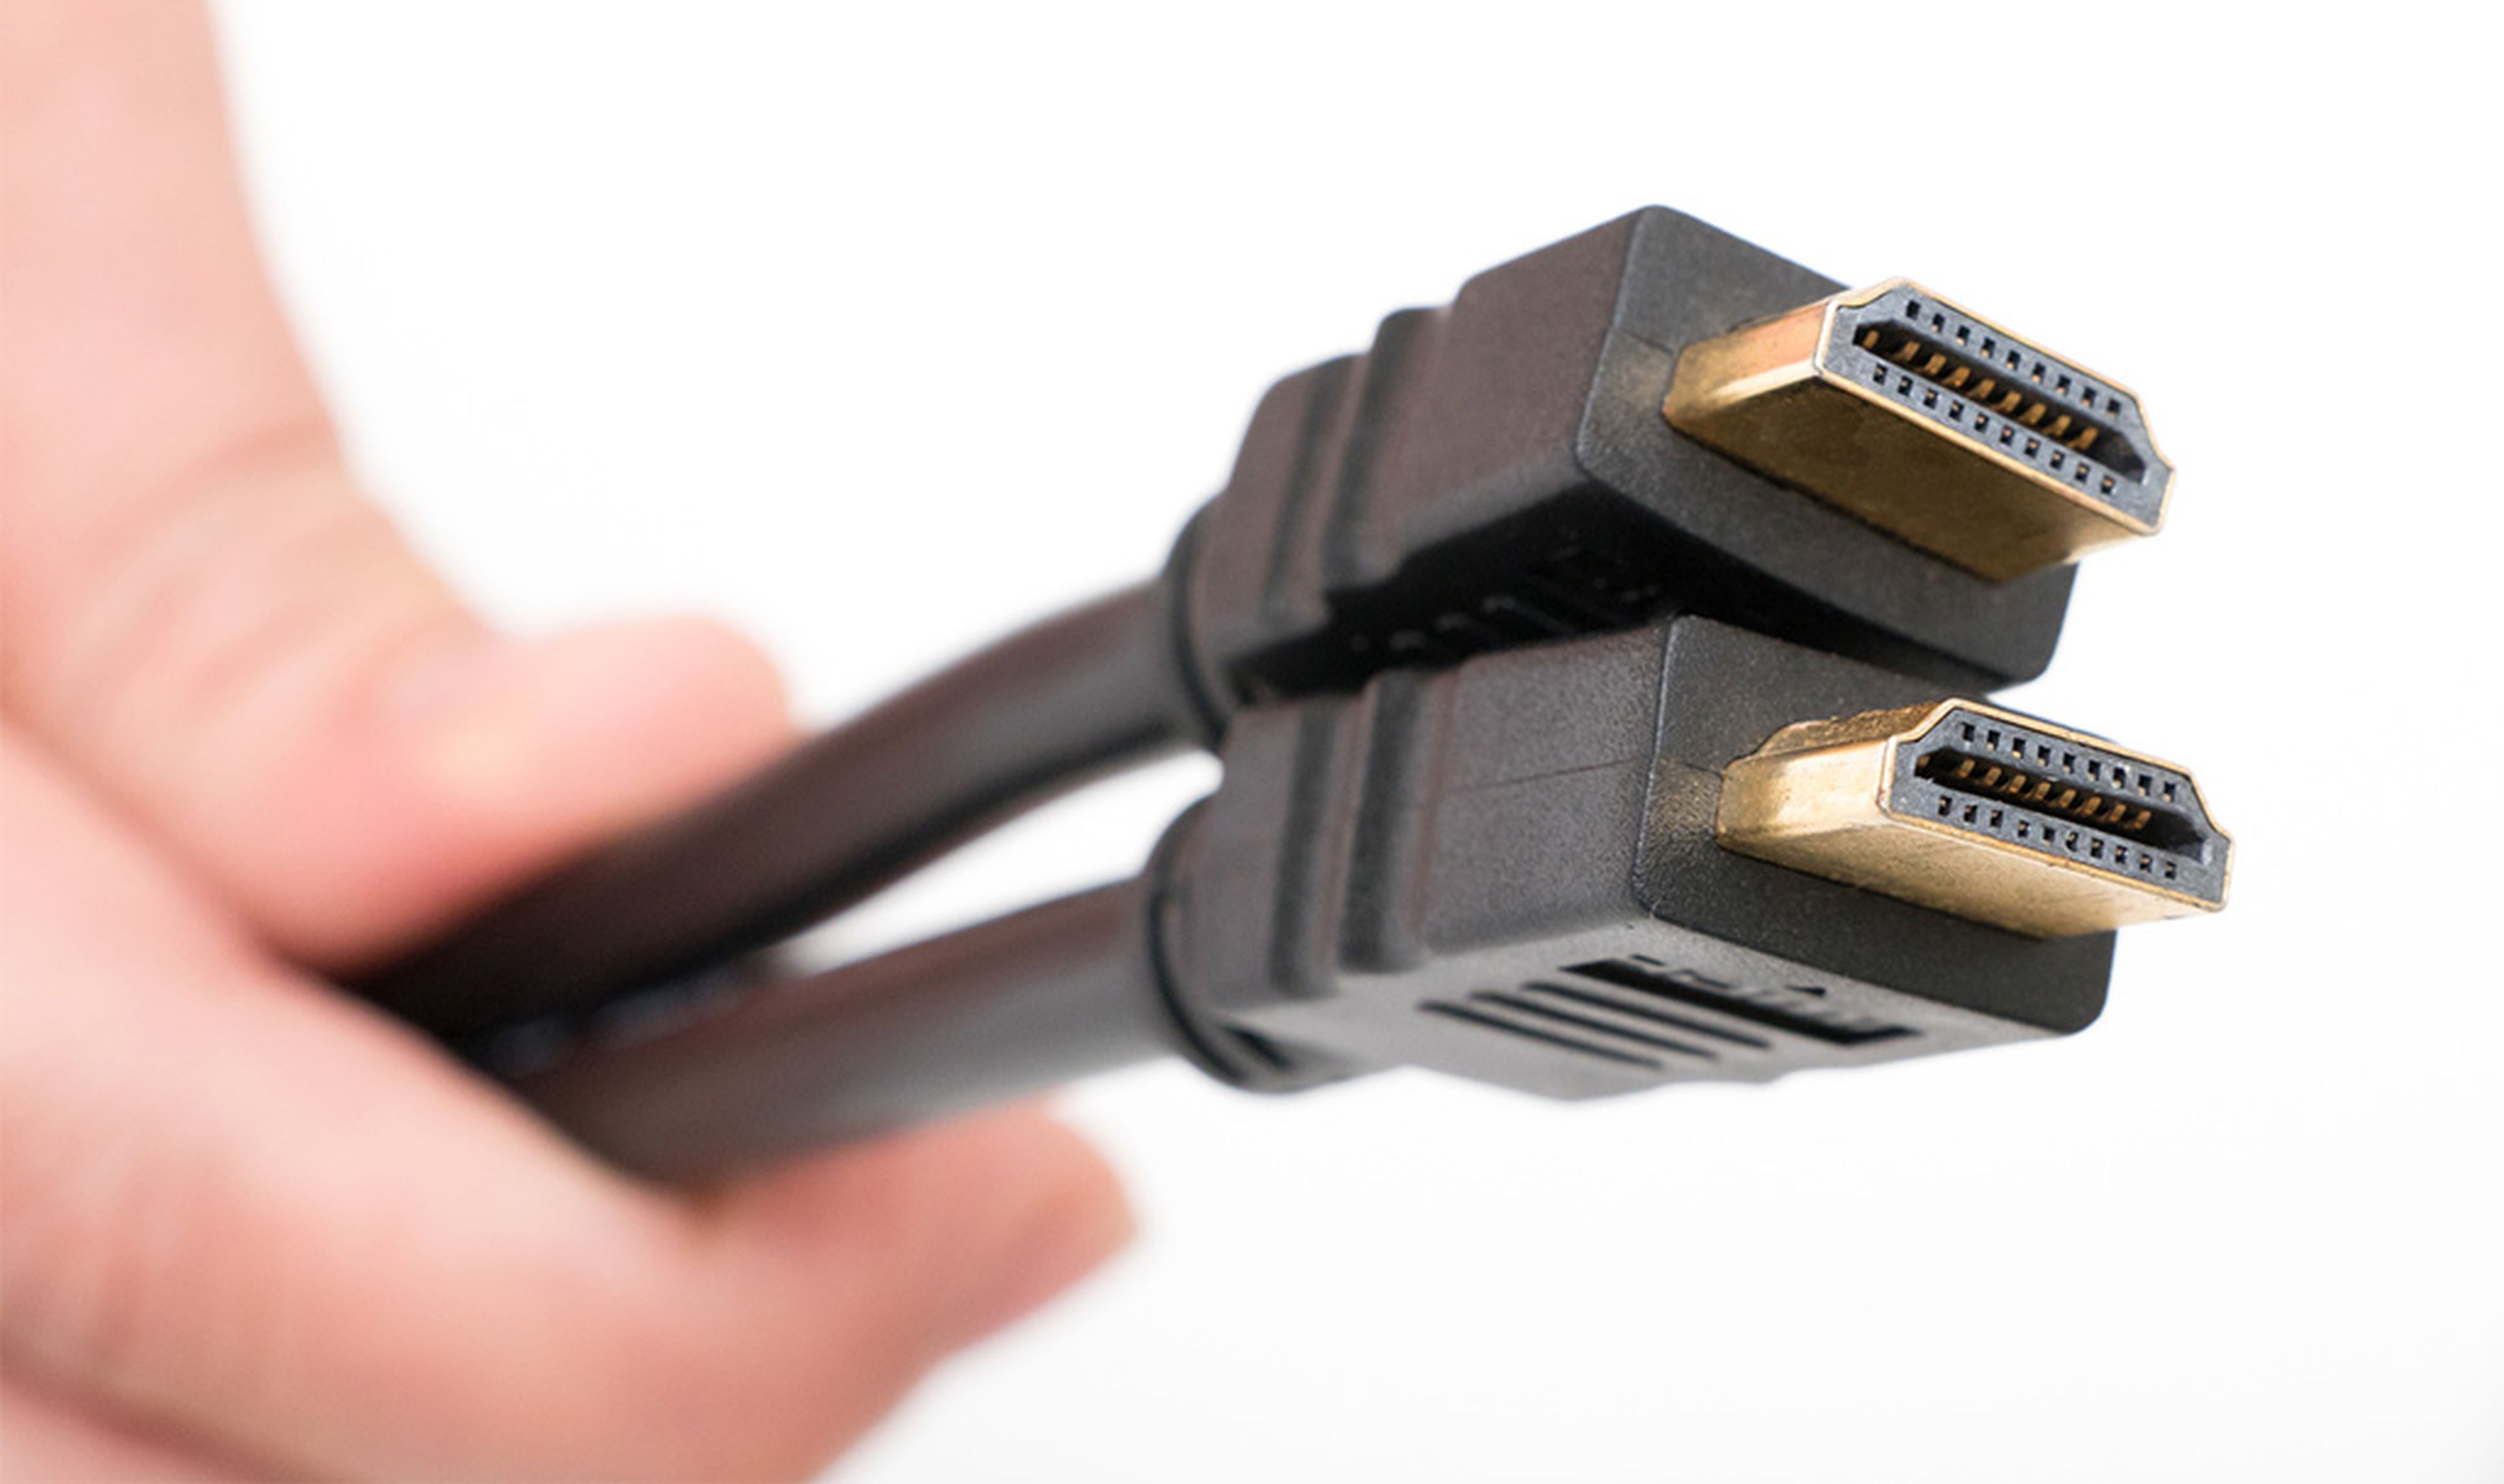 ritmo dolor de cabeza aburrido Tipos de cables HDMI y sus diferencias | Computer Hoy